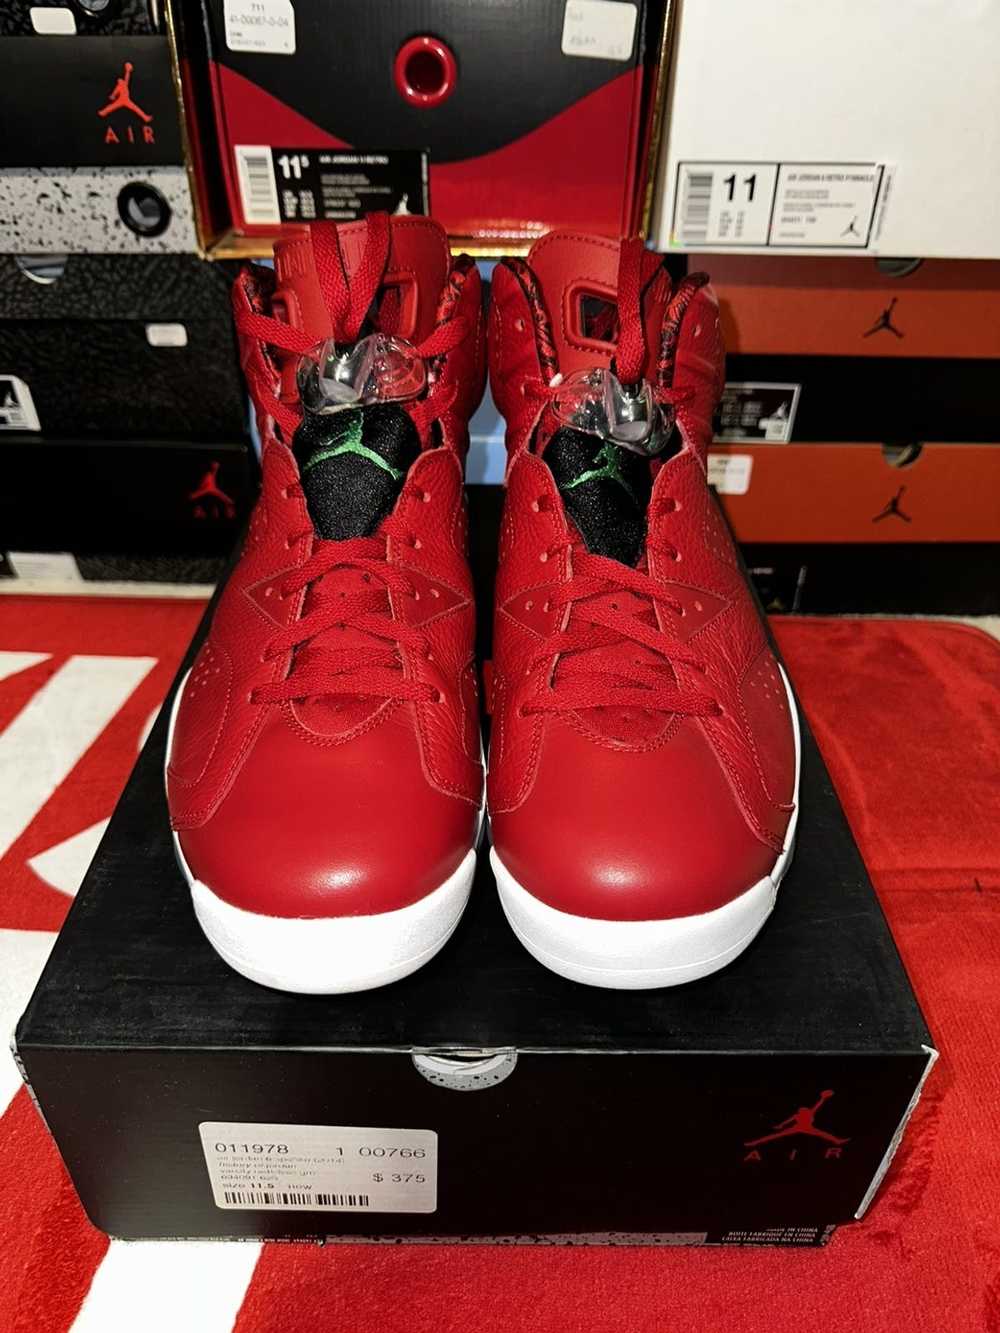 Jordan Brand × Nike Air Jordan 6 “Spizike” - image 2